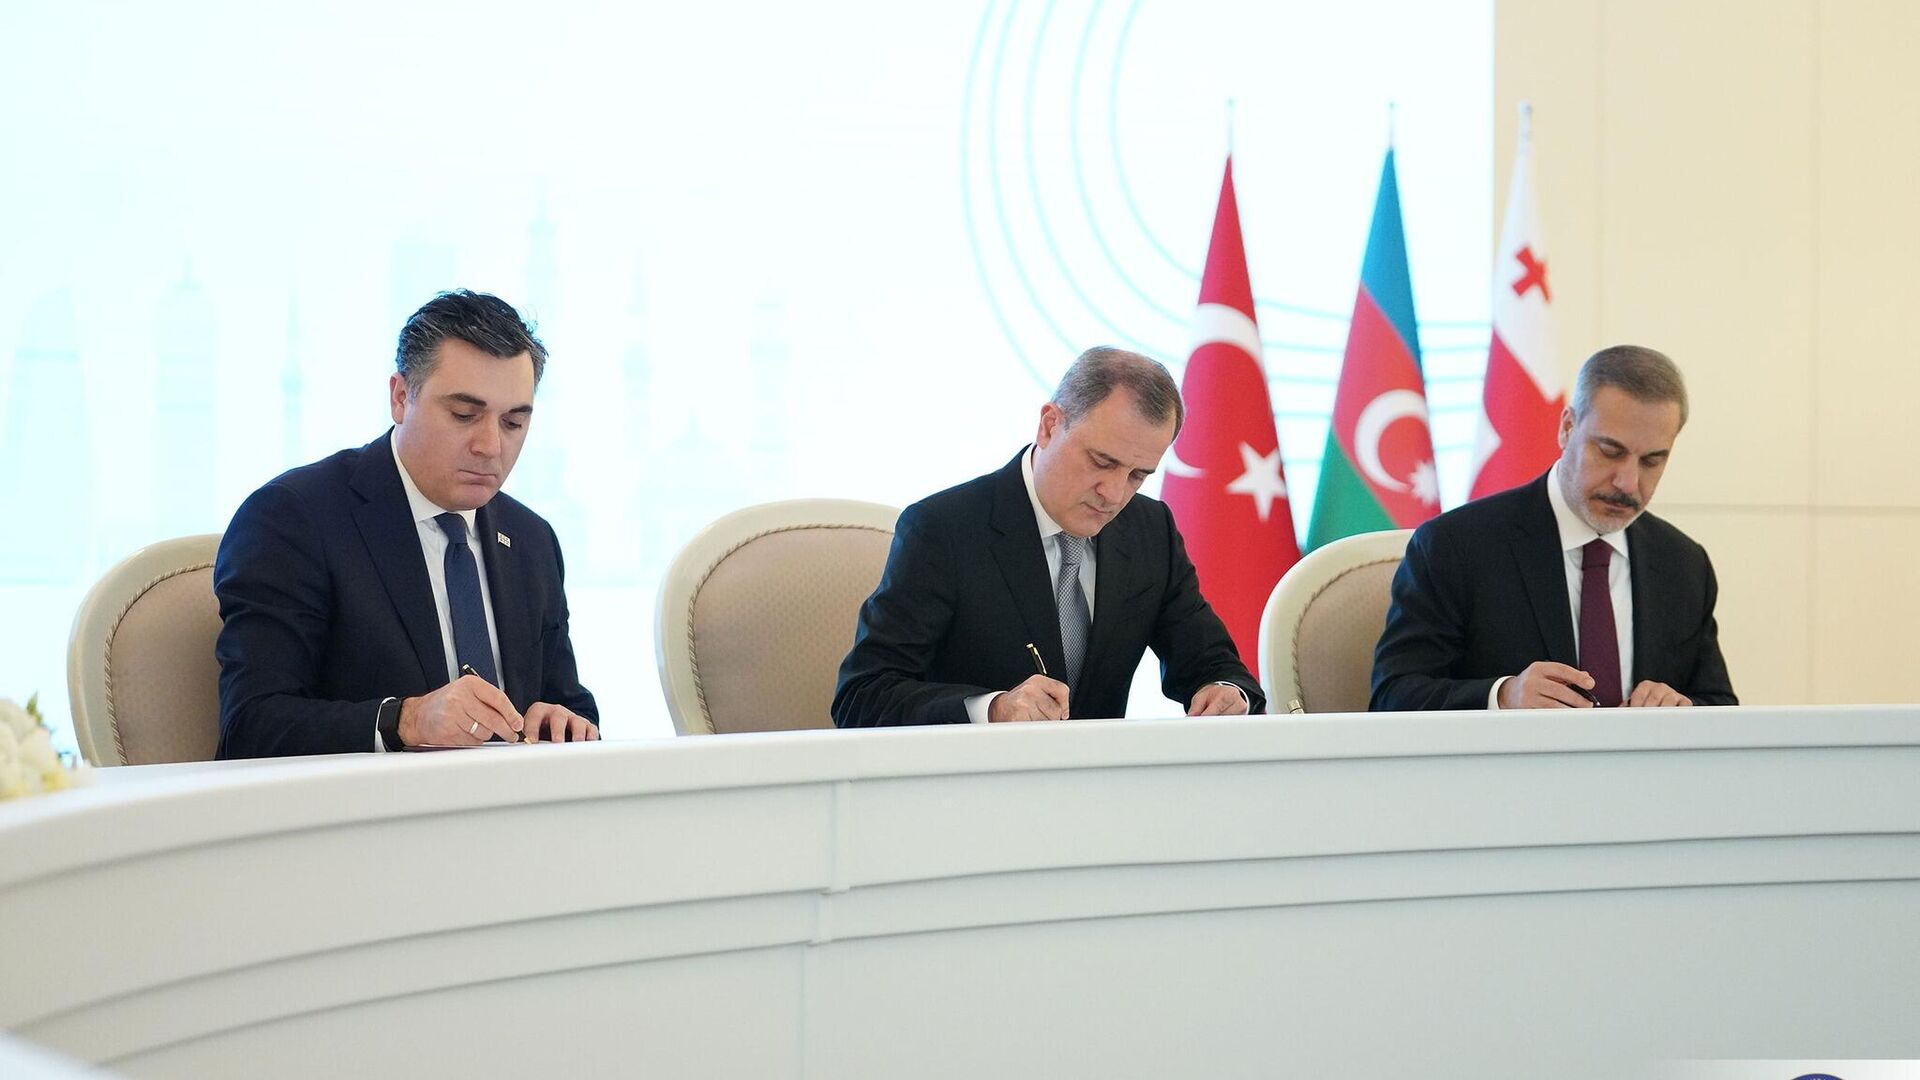 Декларация: установление отношений между Баку и Ереваном вклад в региональную безопасность